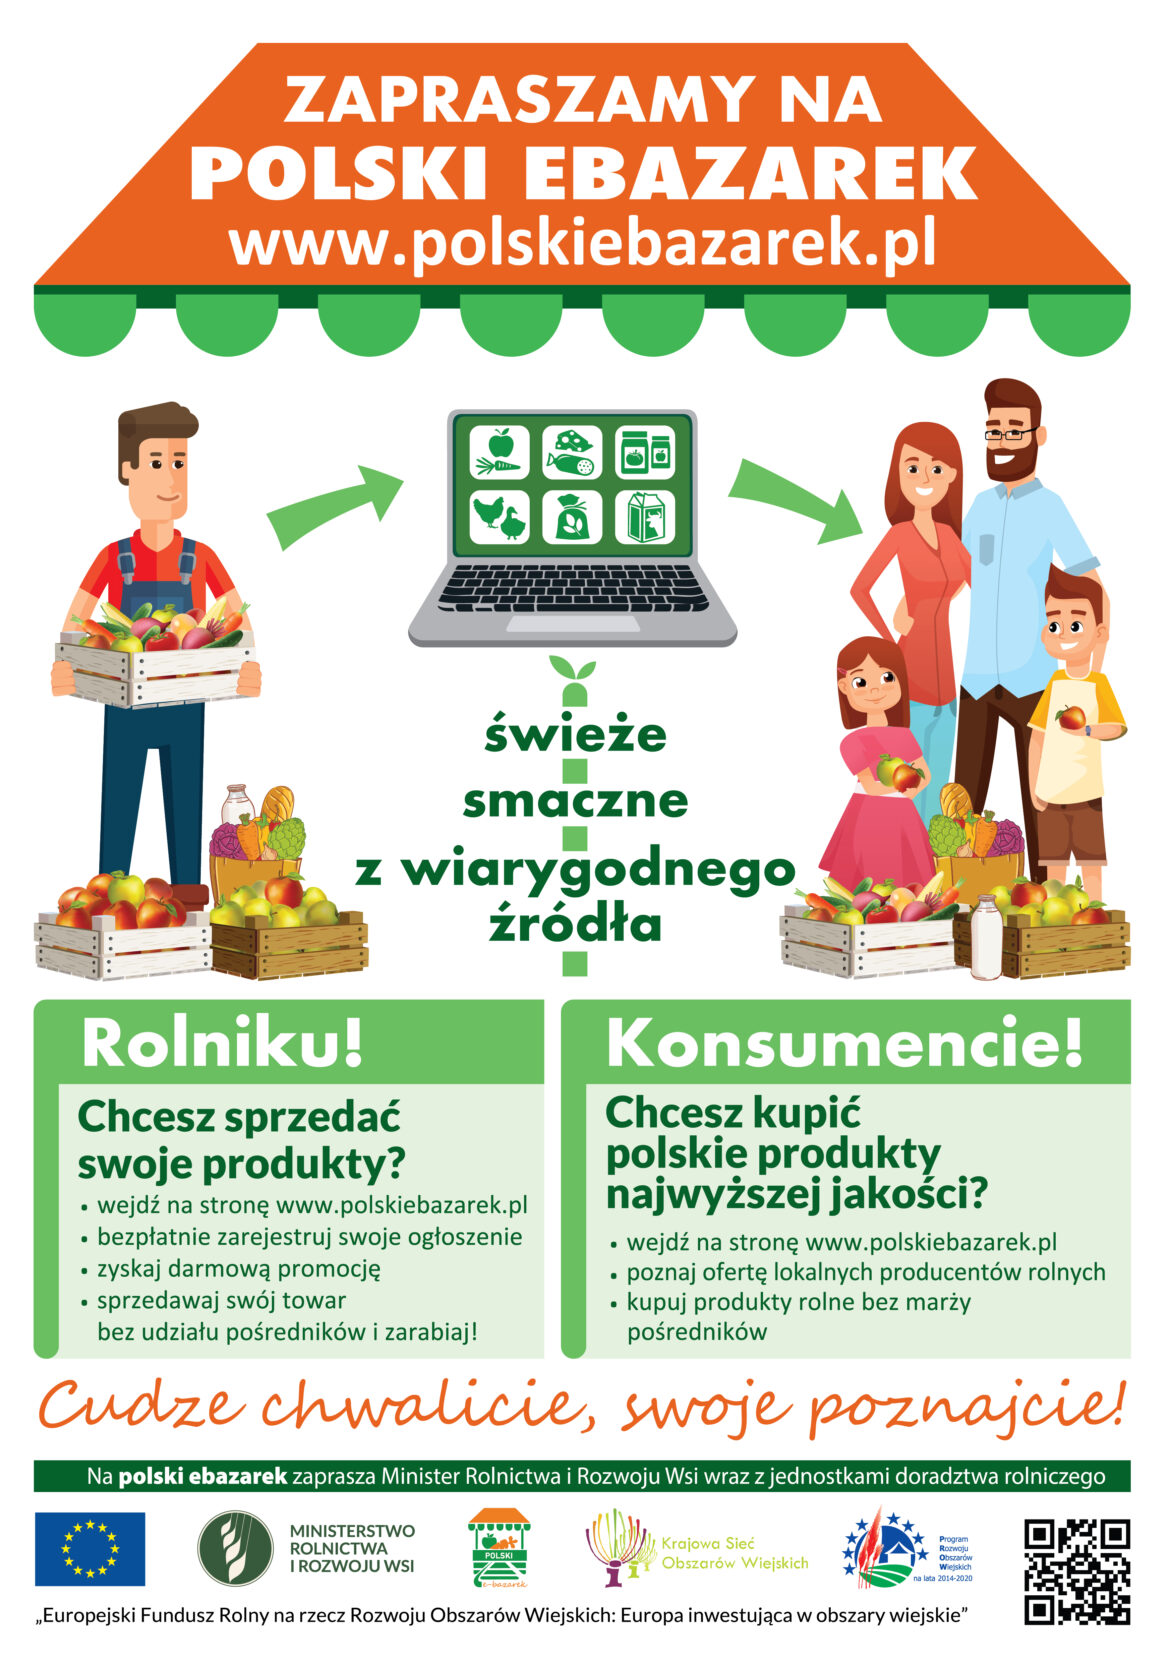 Plakat prezentujący pozytywne elementy strony polskibazarek.pl